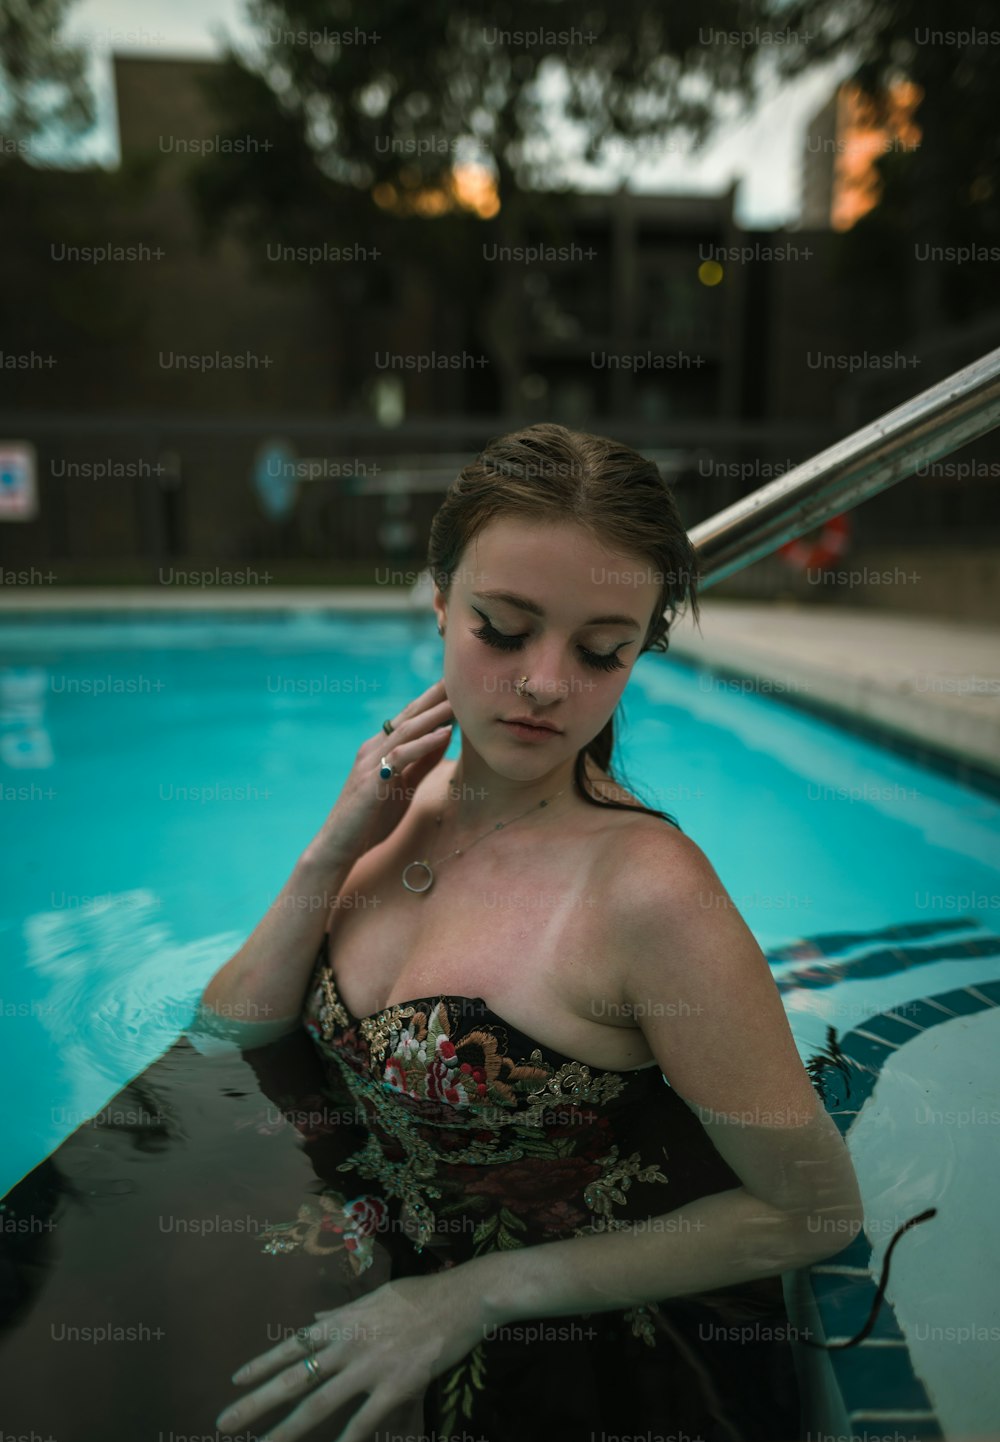 Una mujer parada en una piscina hablando por teléfono celular